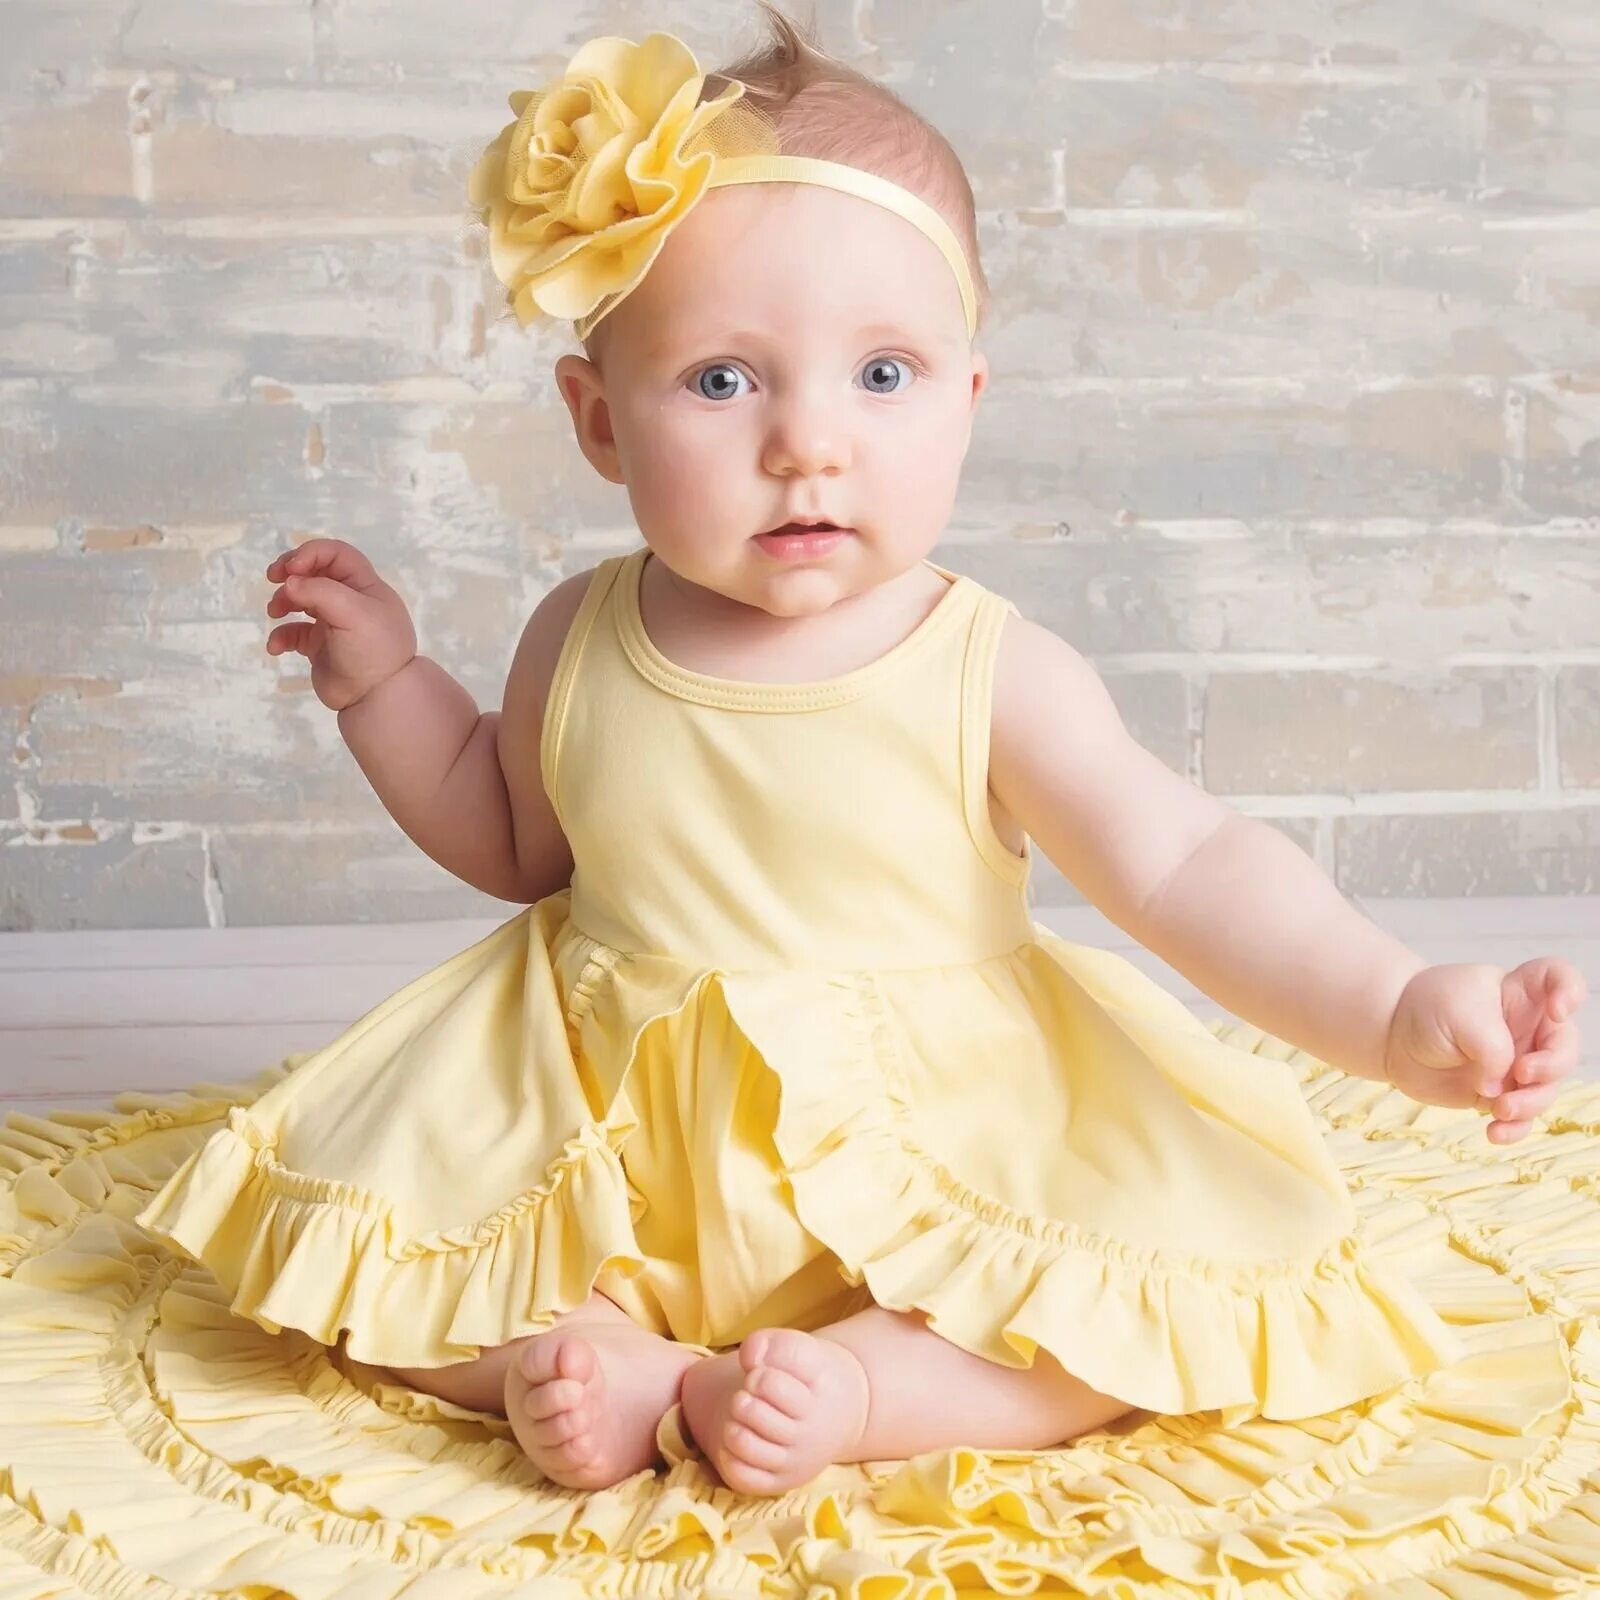 Baby and yellow. Платье желтое для новорожденной девочки. Младенец в желтом девочка. Малыш желтый. Беби в желтом.